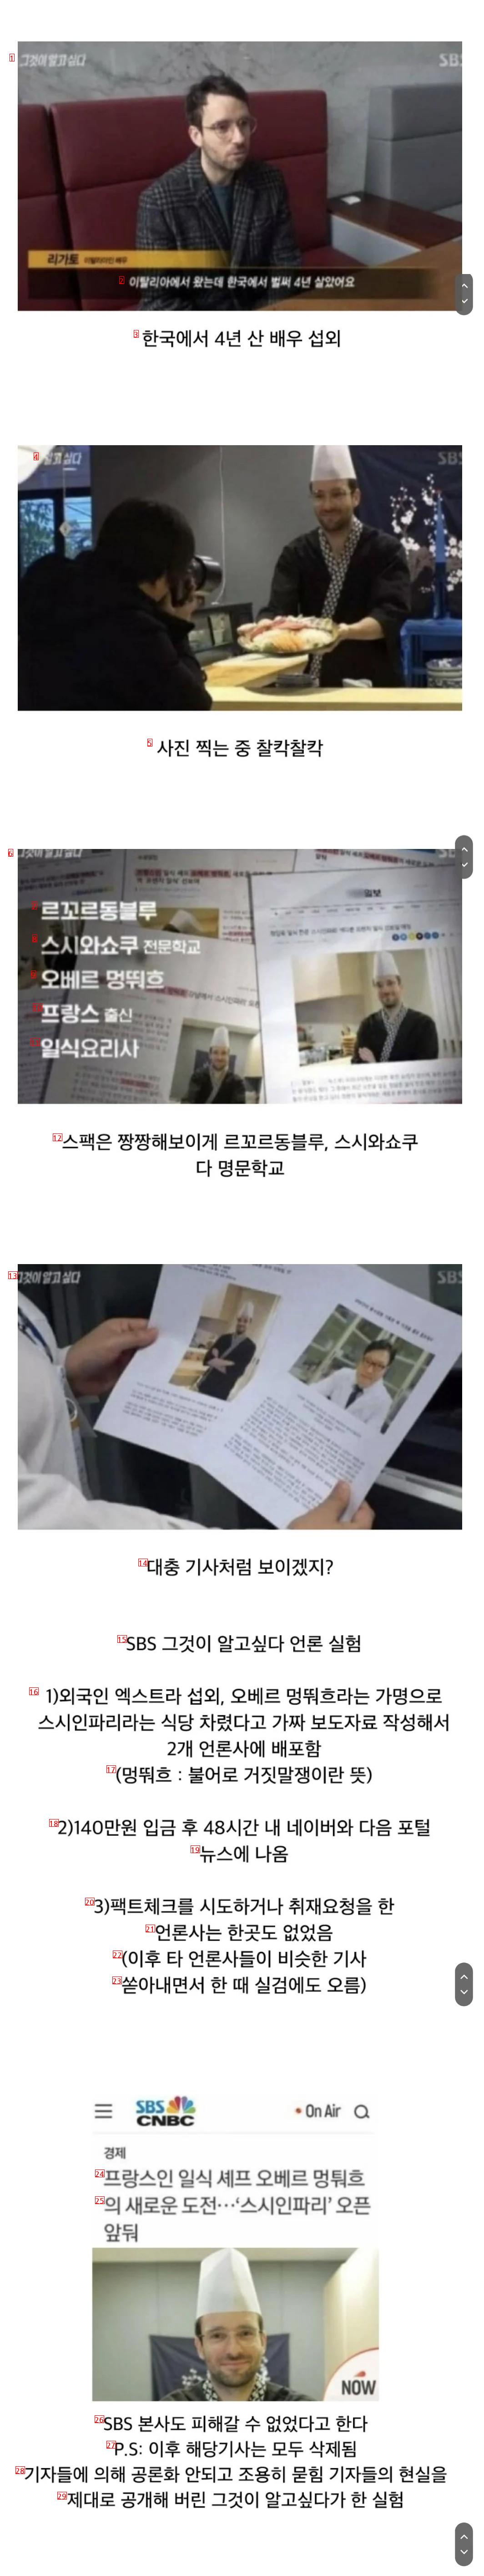 韓国の記者たちの現実を公開した実験